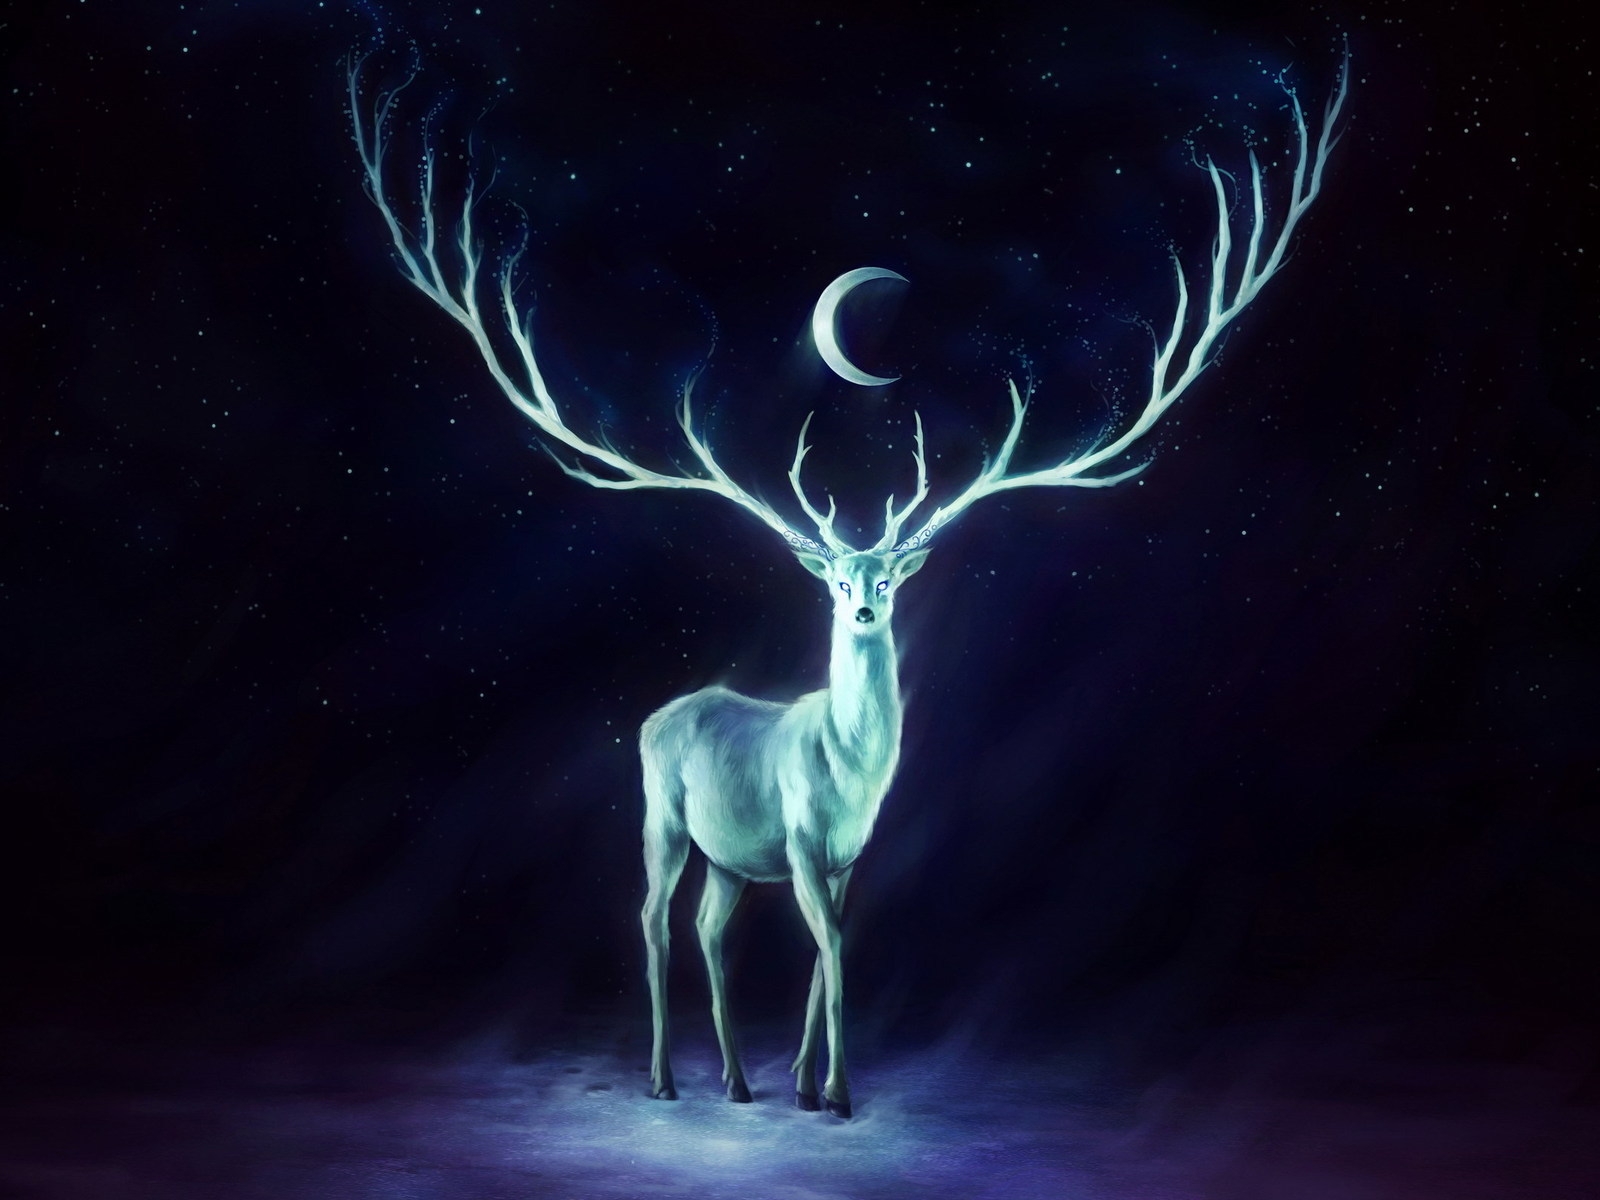 White Deer for 1600 x 1200 resolution